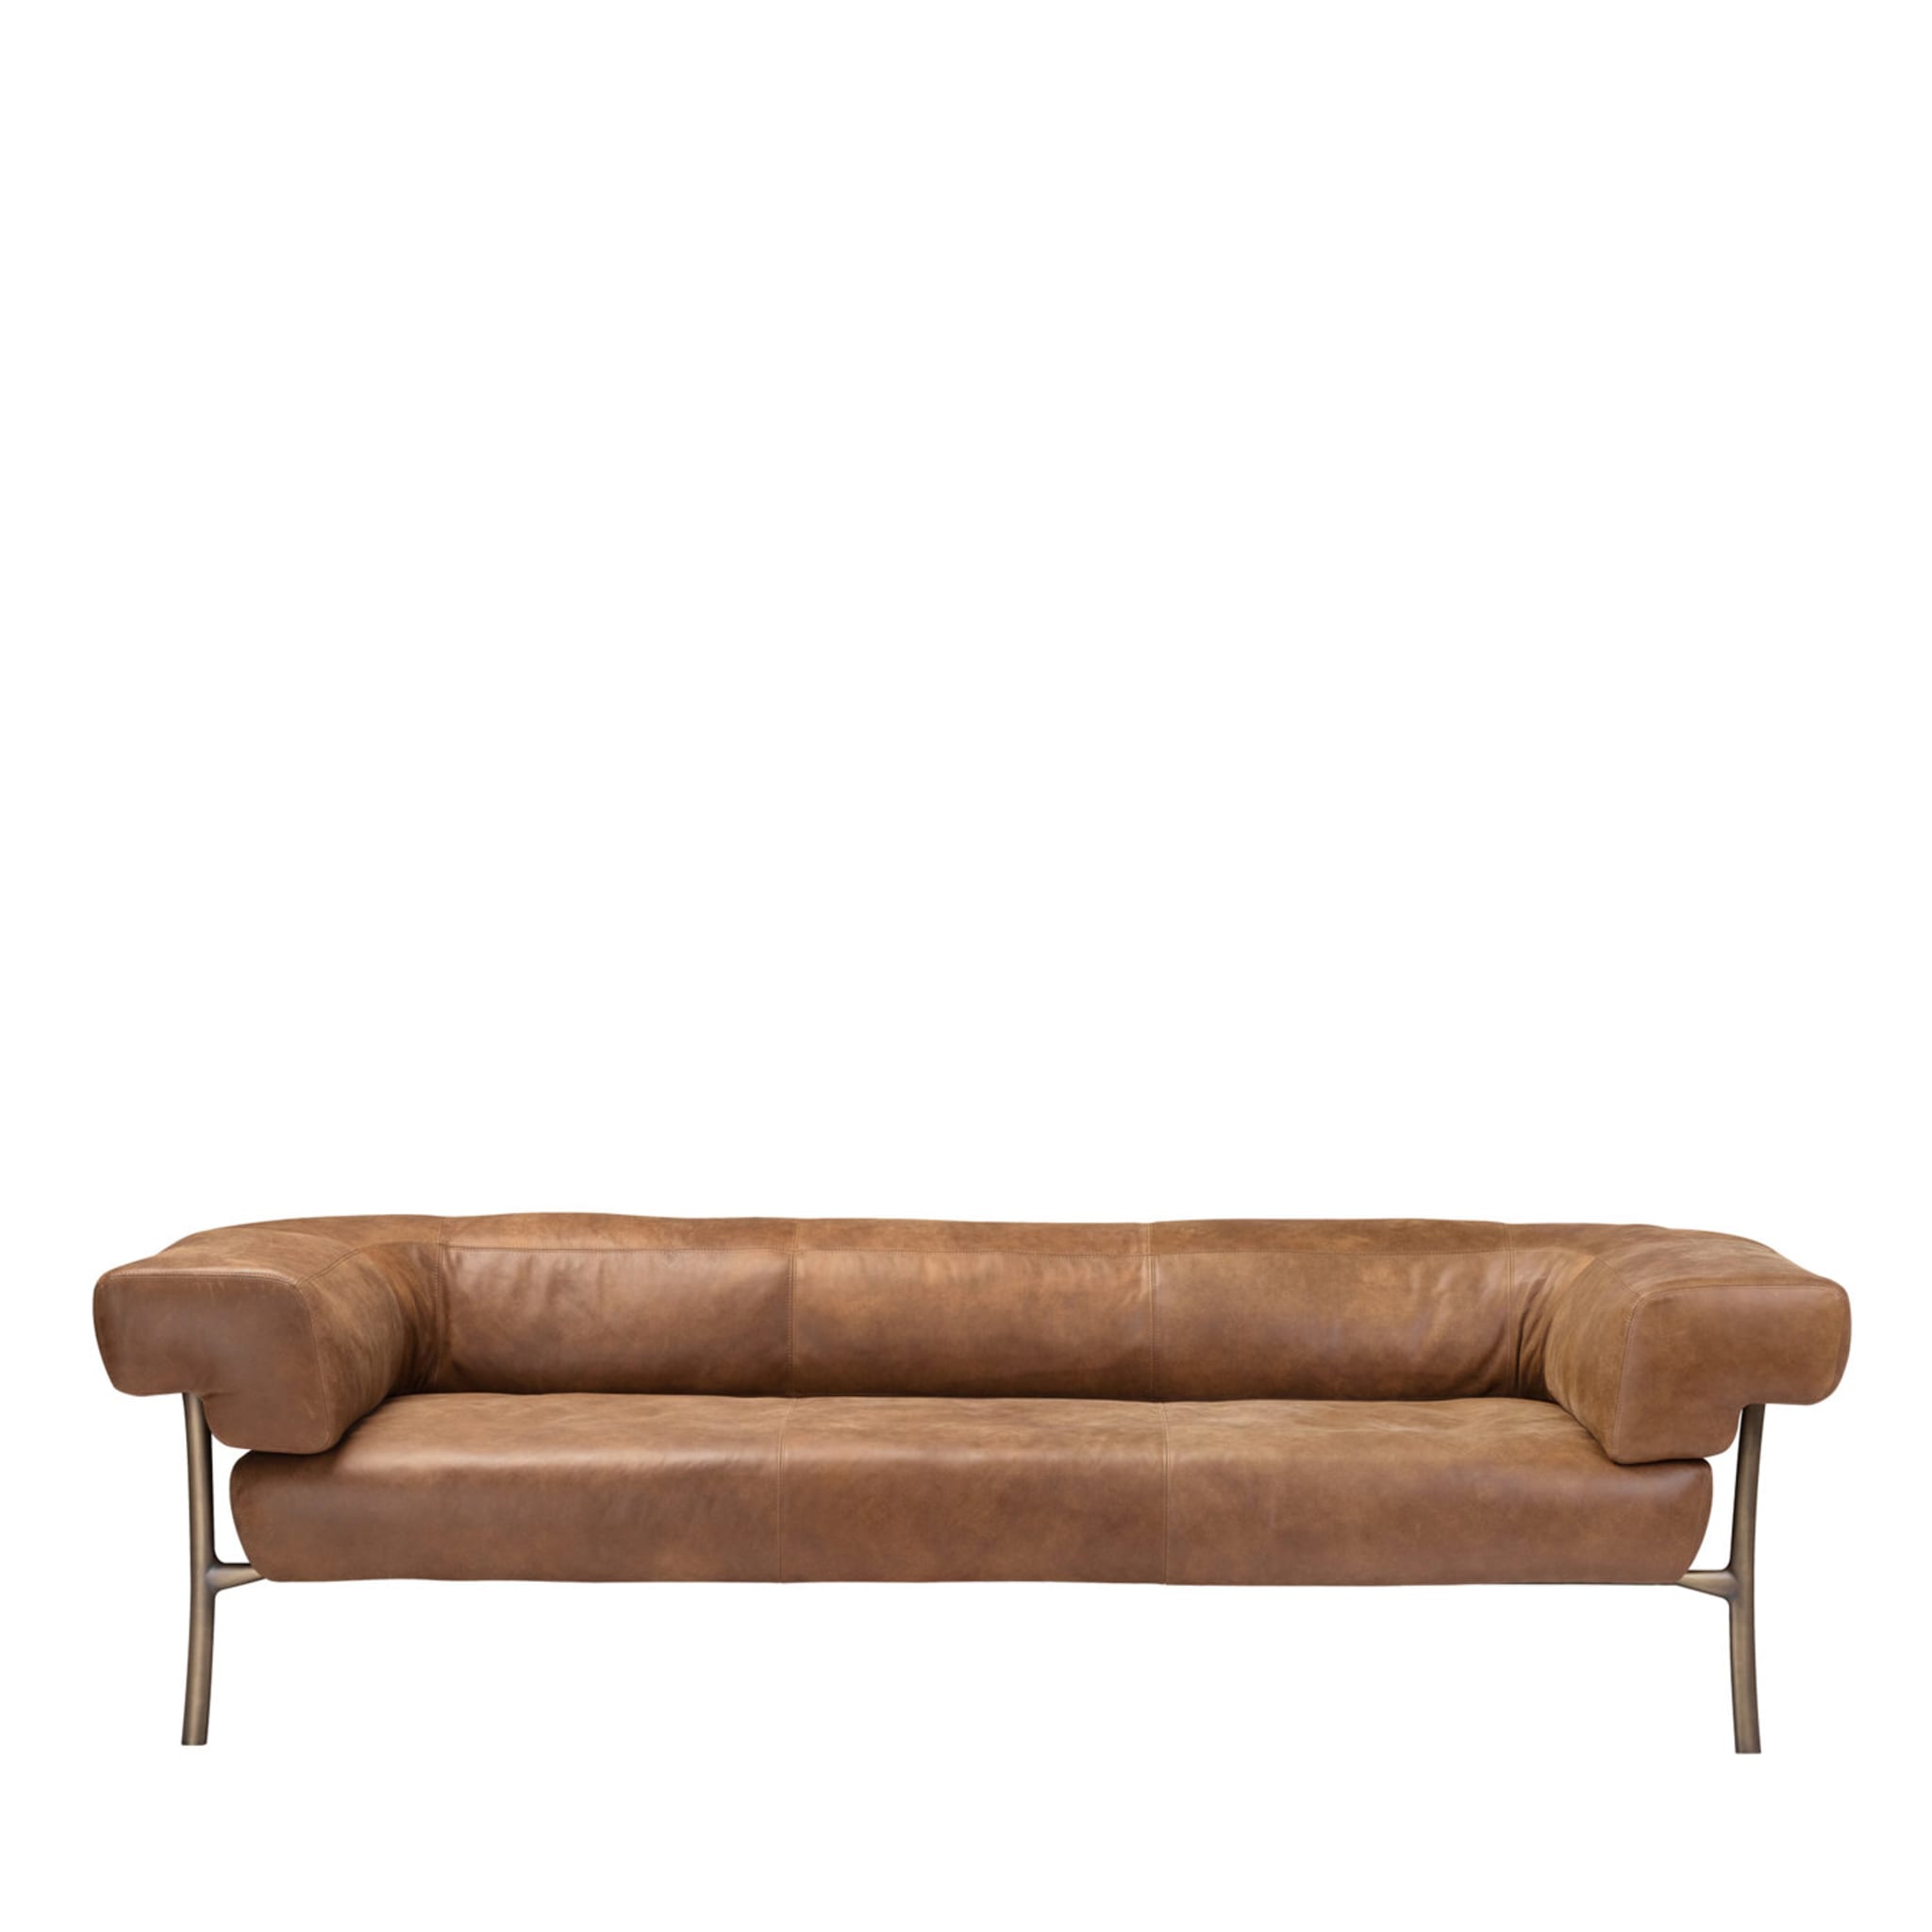 Katana 3-Sitz Leder Sofa von Paolo Rizzato  - Hauptansicht